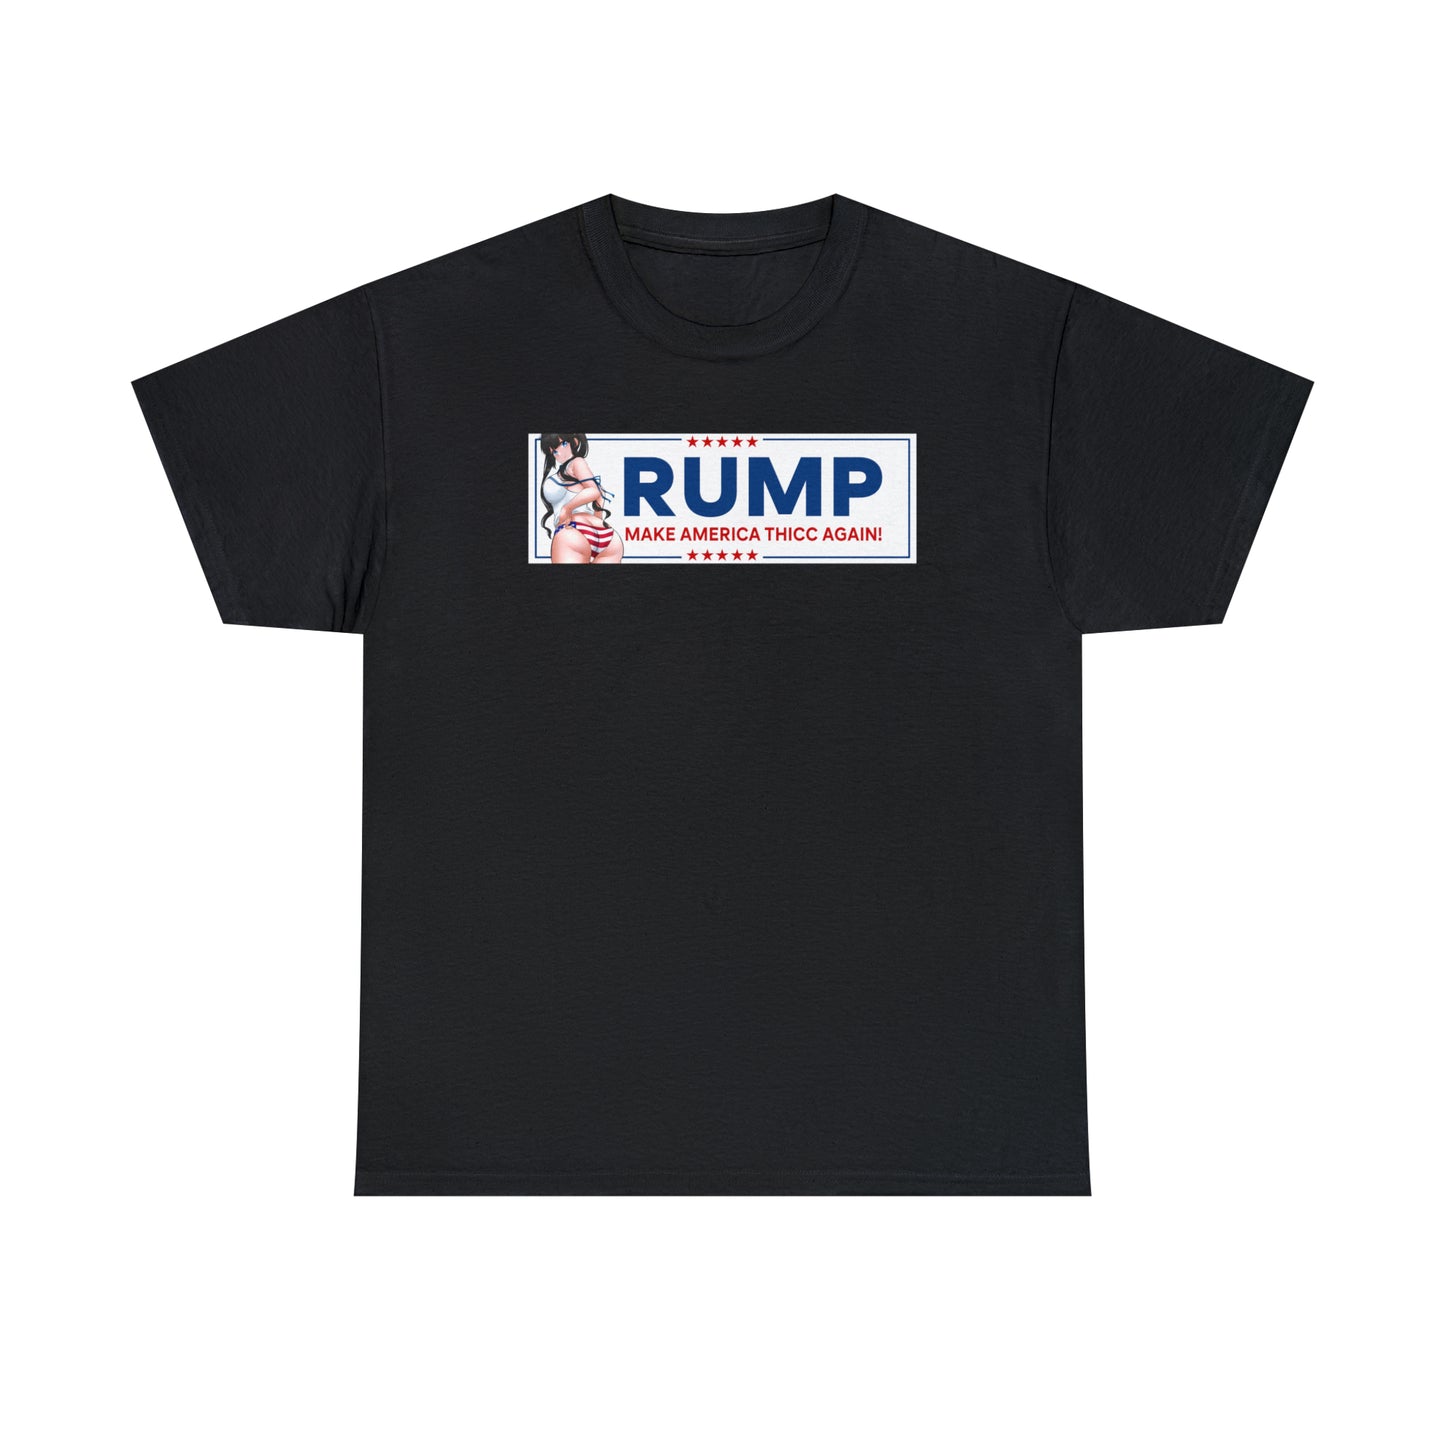 Rump Hestia T-Shirt